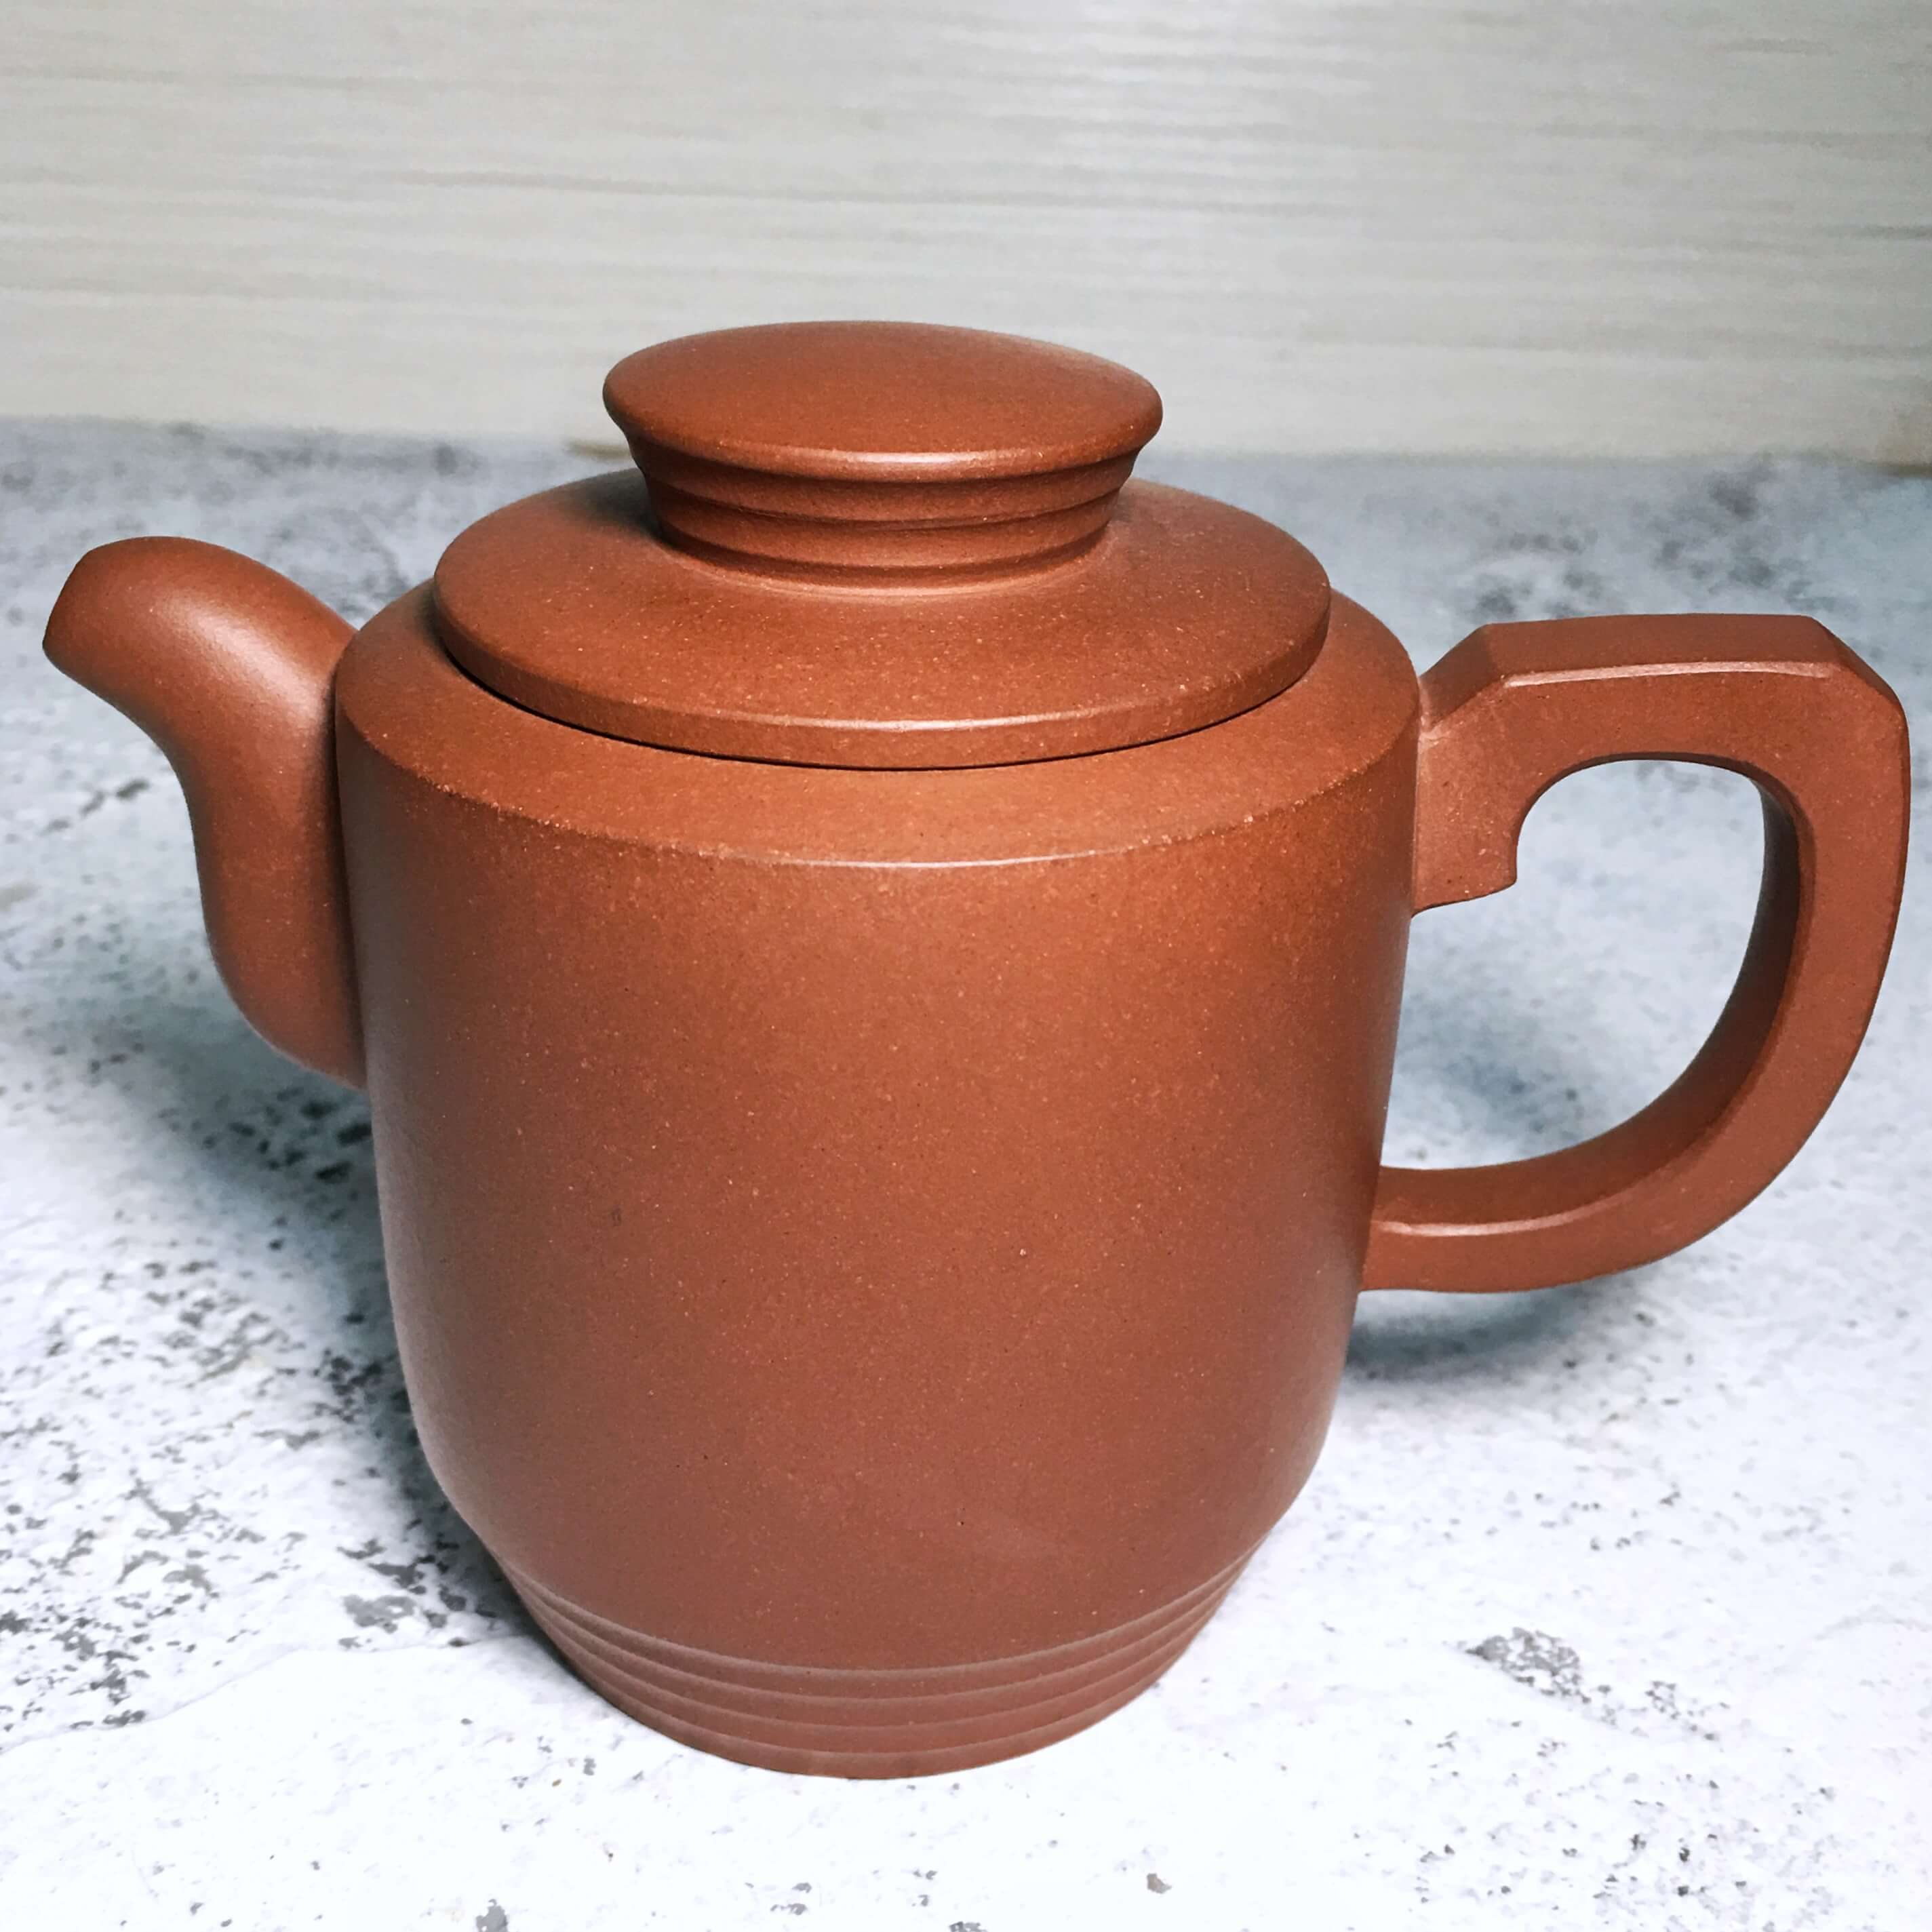 Yixing teapot by Jing Tea Shop